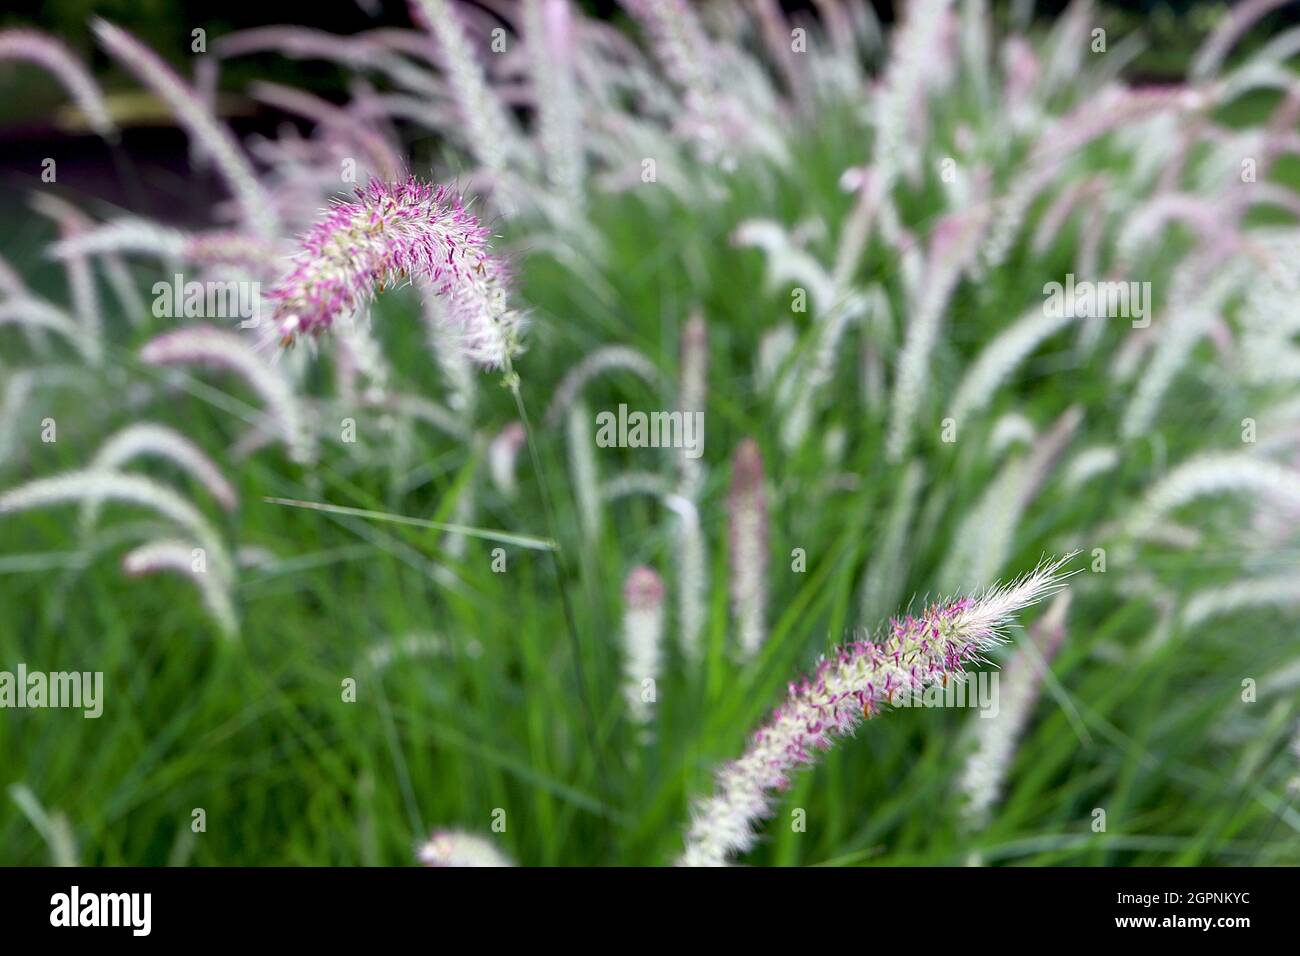 Pennisetum ‘Fairy Tails’ fontana erba Fairy Tails – arcate panicles di fiori color argento viola e metà verde foglie strette, settembre, Regno Unito Foto Stock